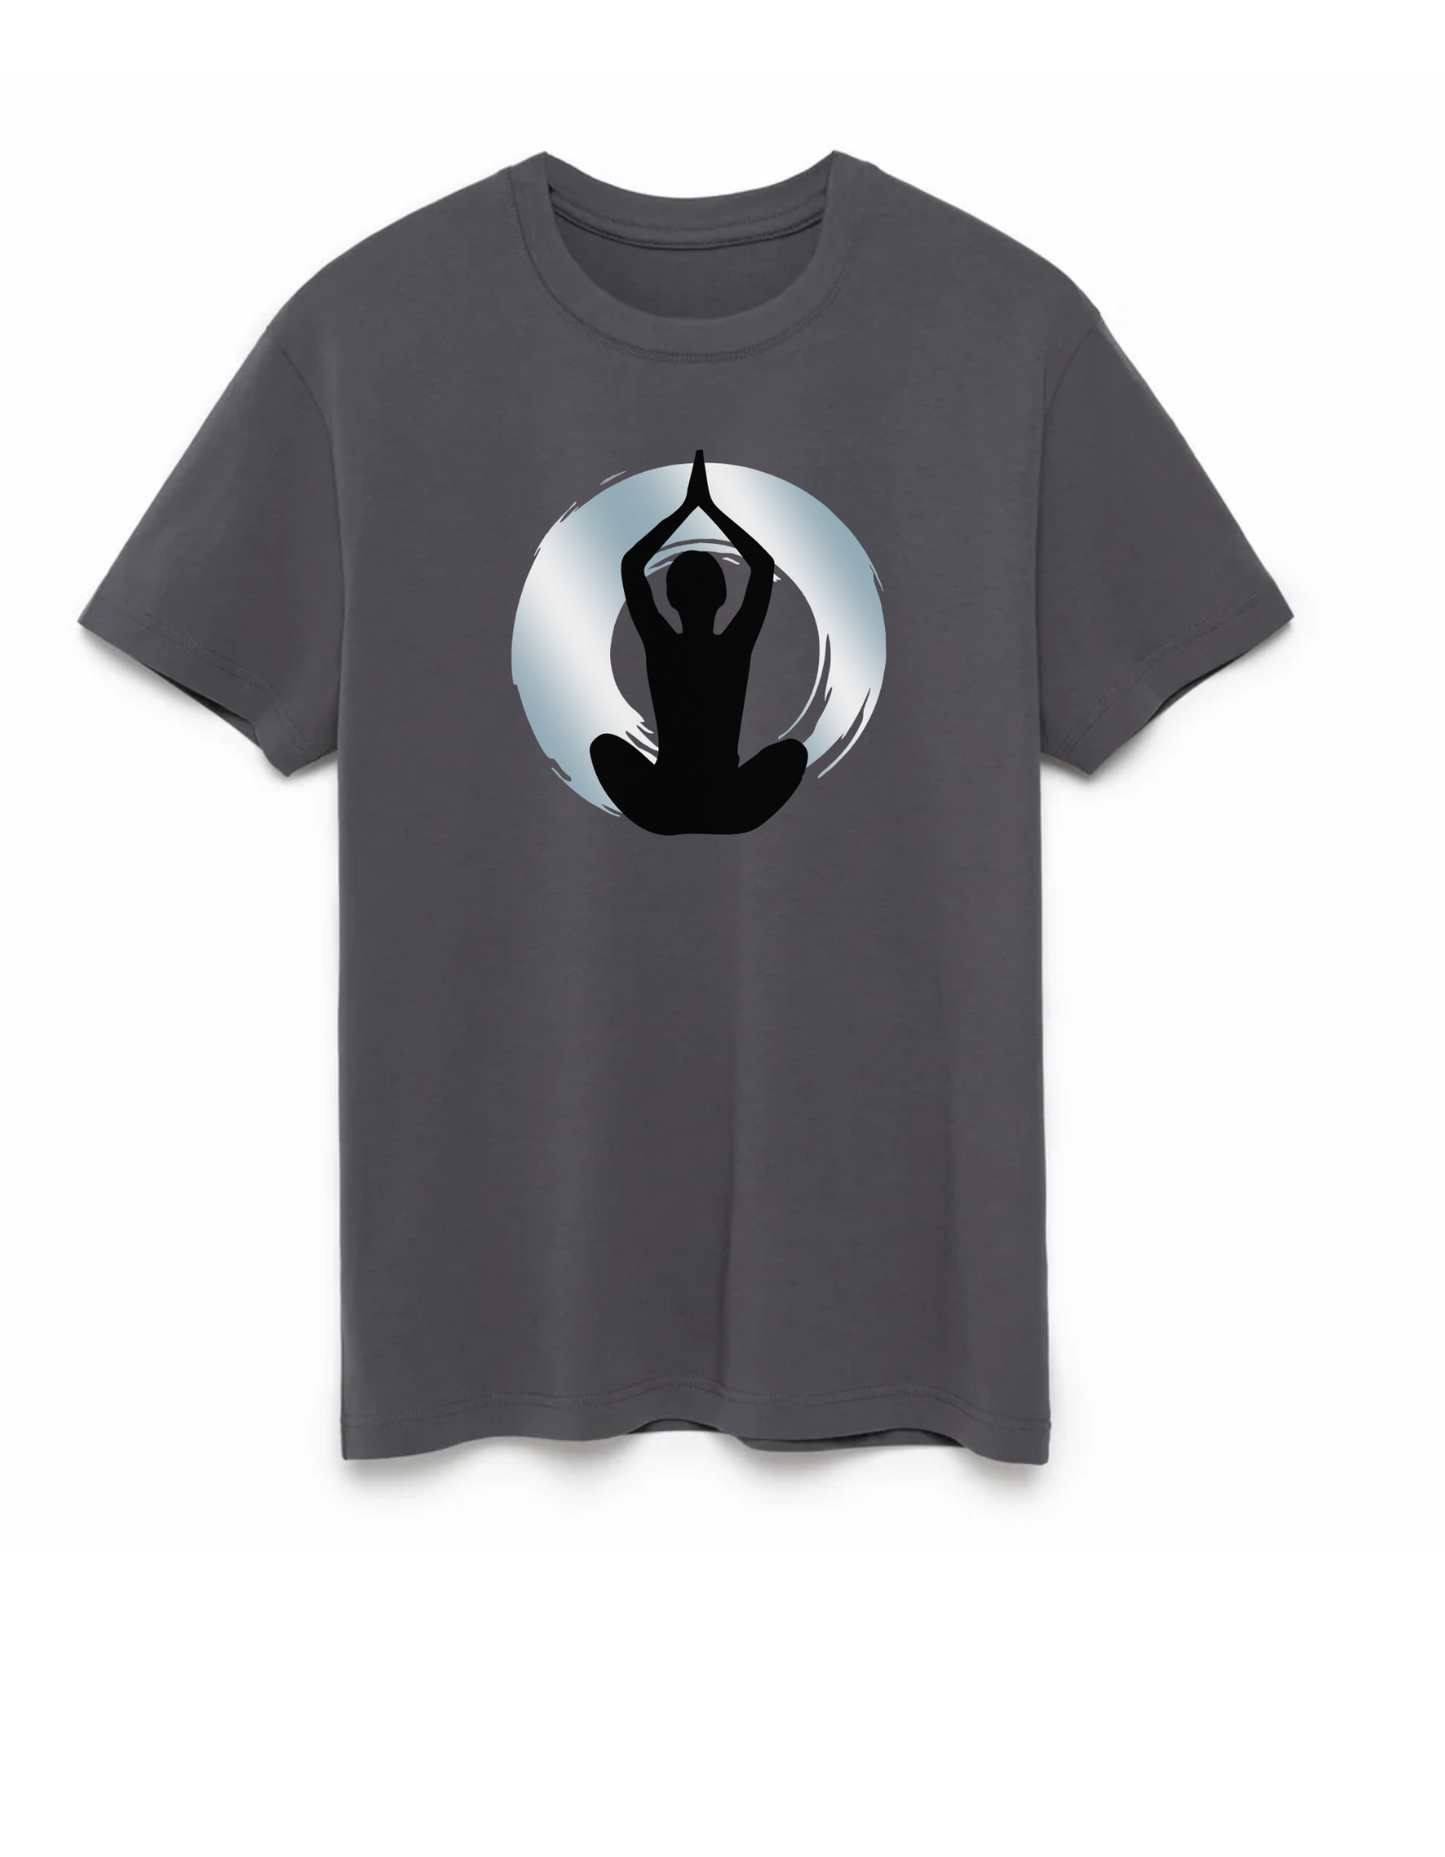 Baker Health Yoga - Unisex Short Sleeve T-Shirt